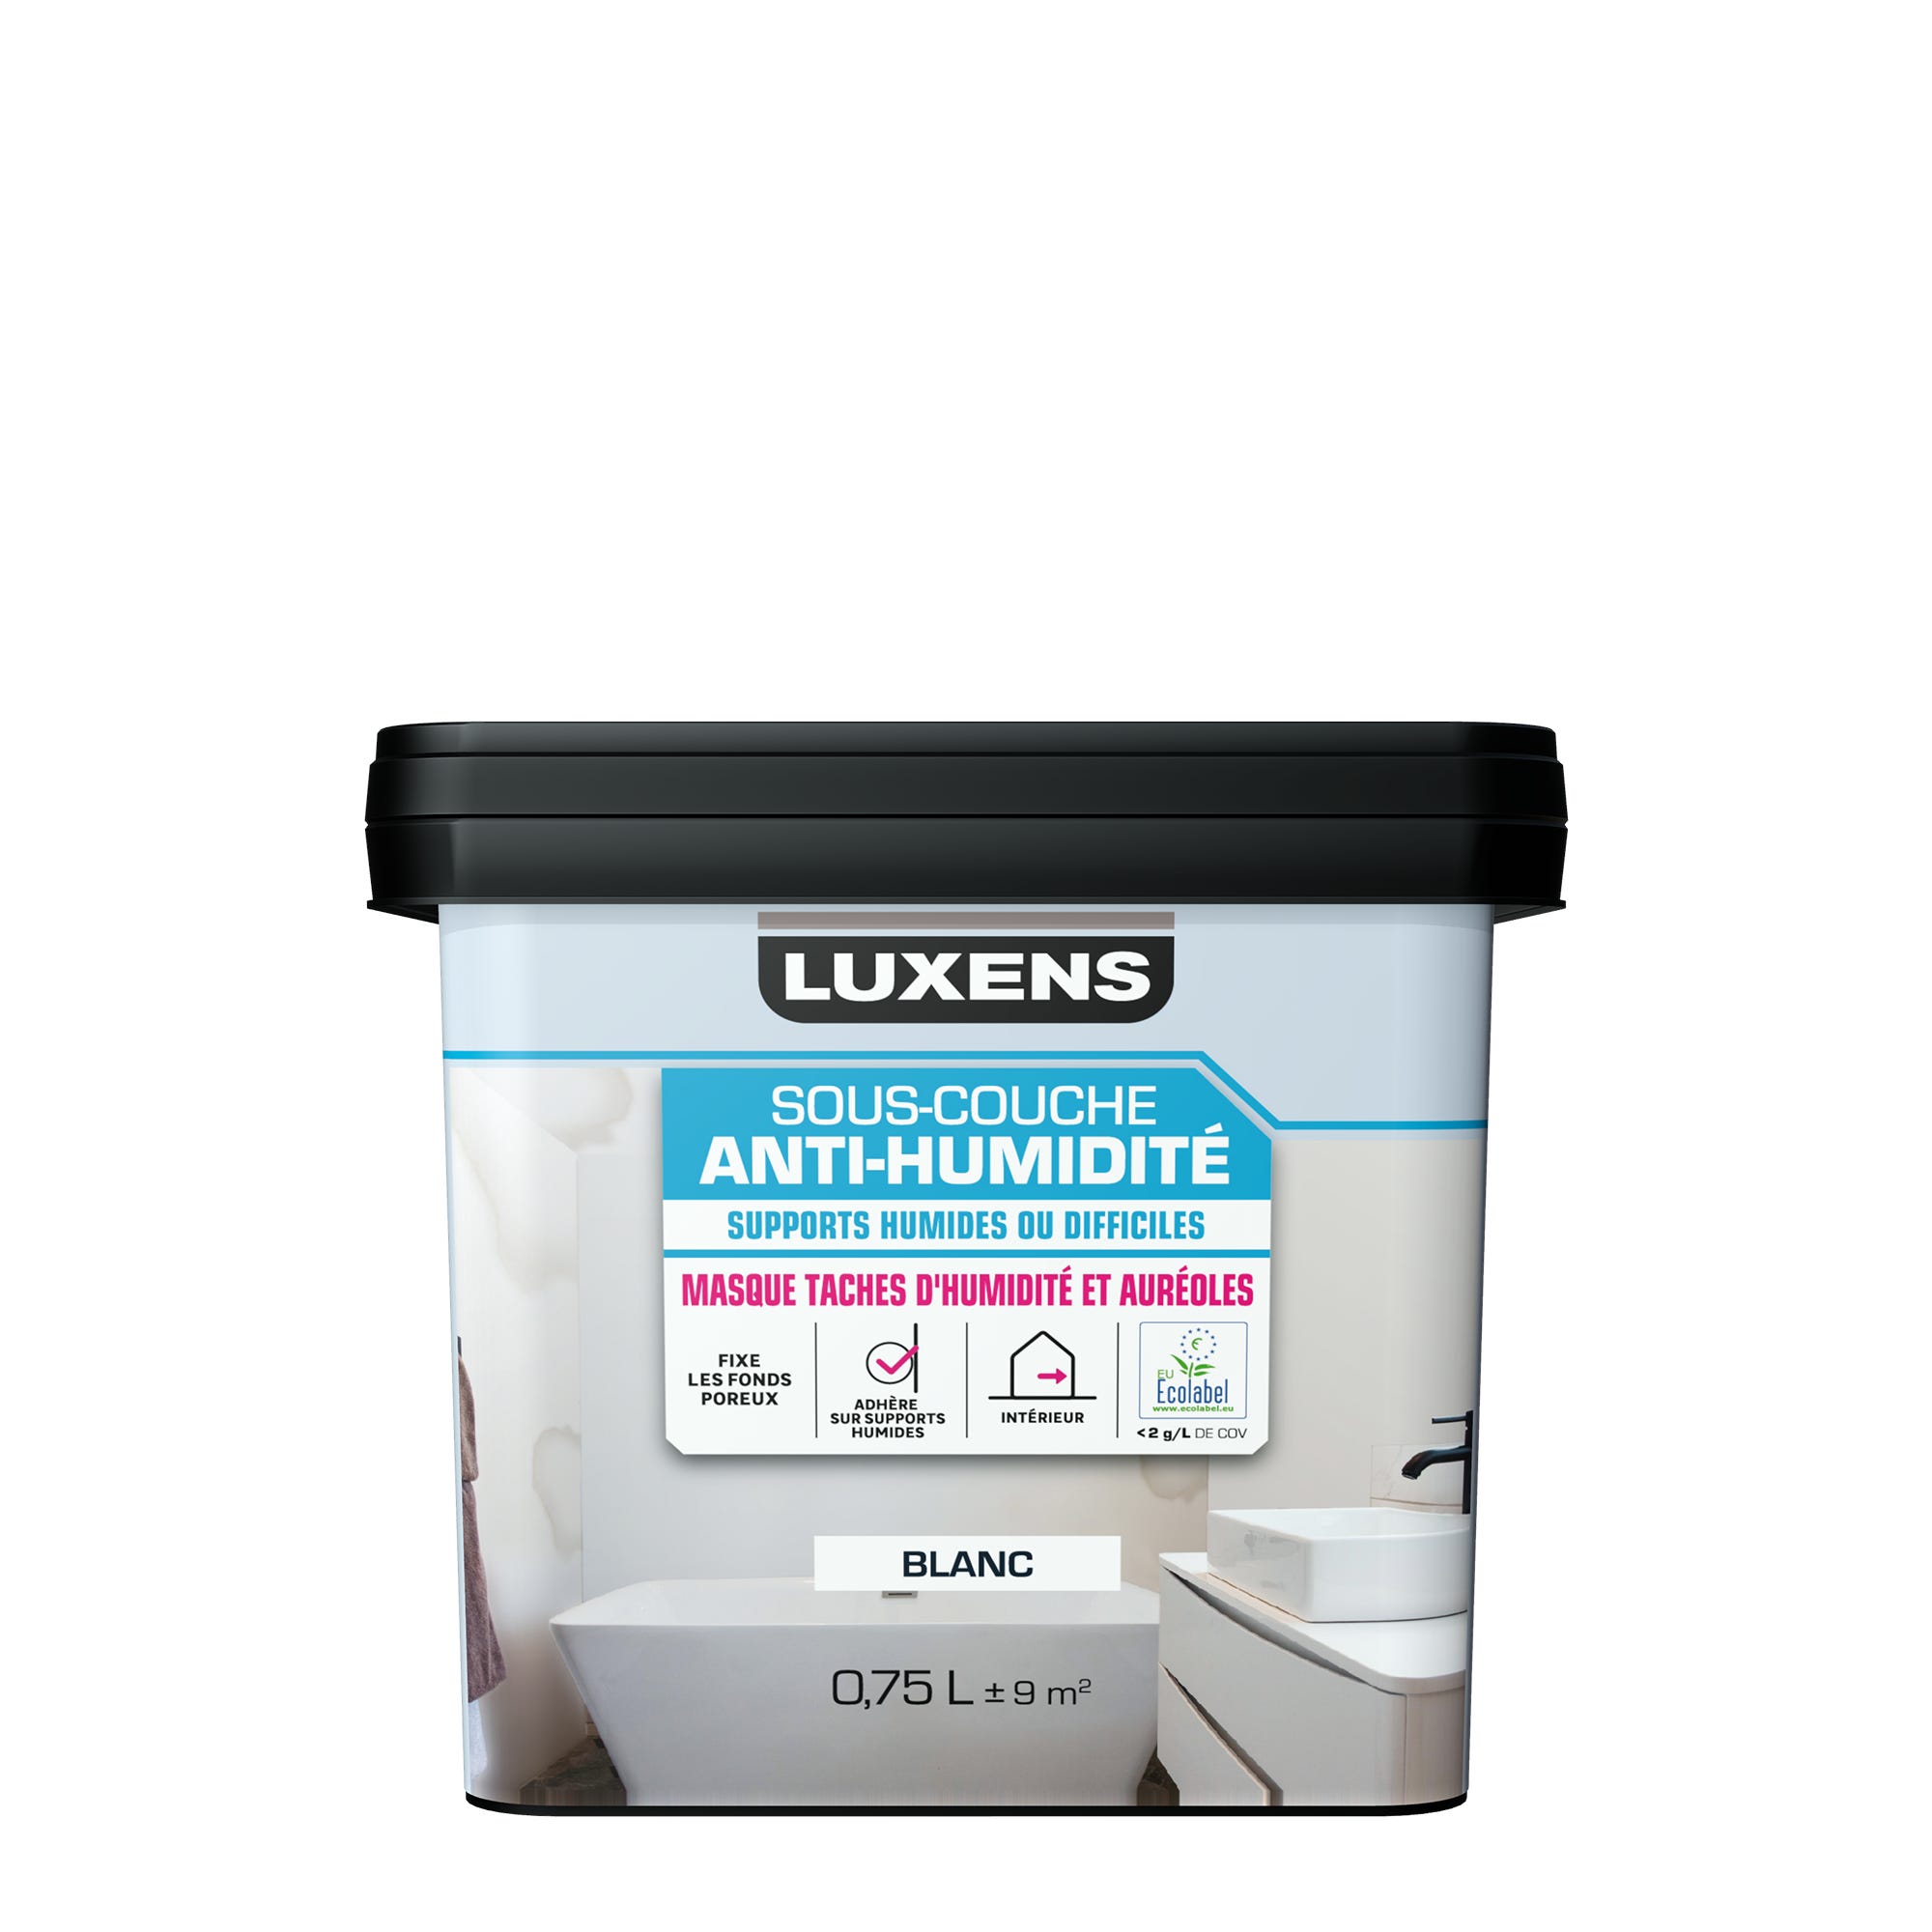 Sous-couche anti-humidité LUXENS blanc 0.75 l